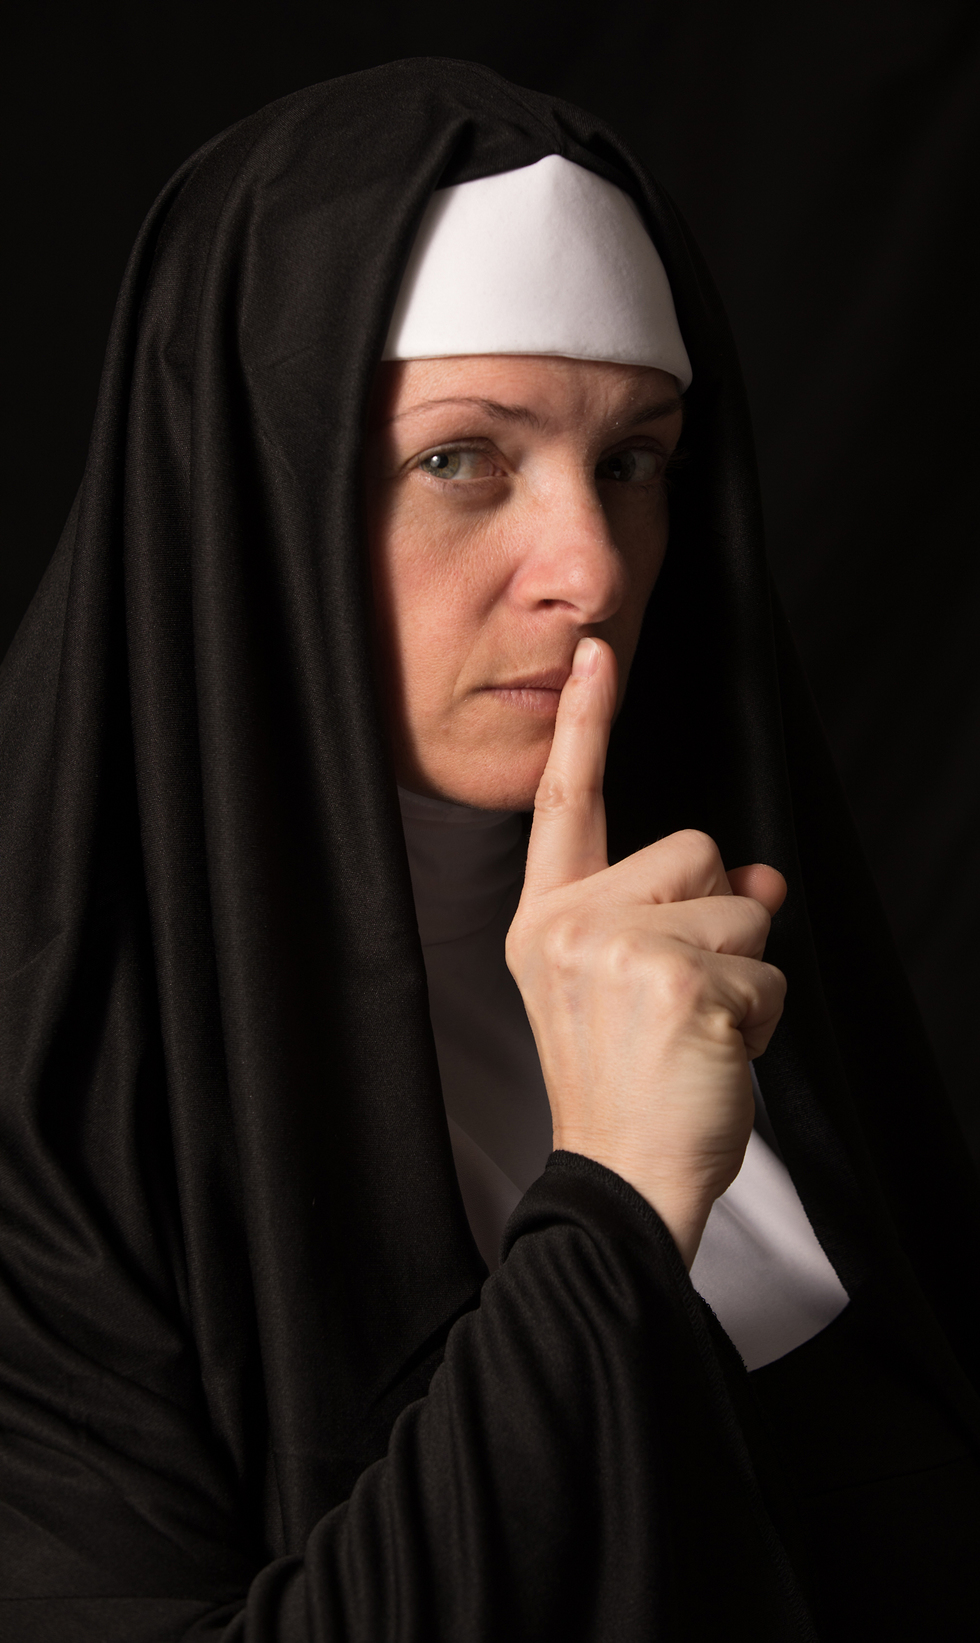 אילוס אילוסטרציה נזירה (צילום: shutterstock)